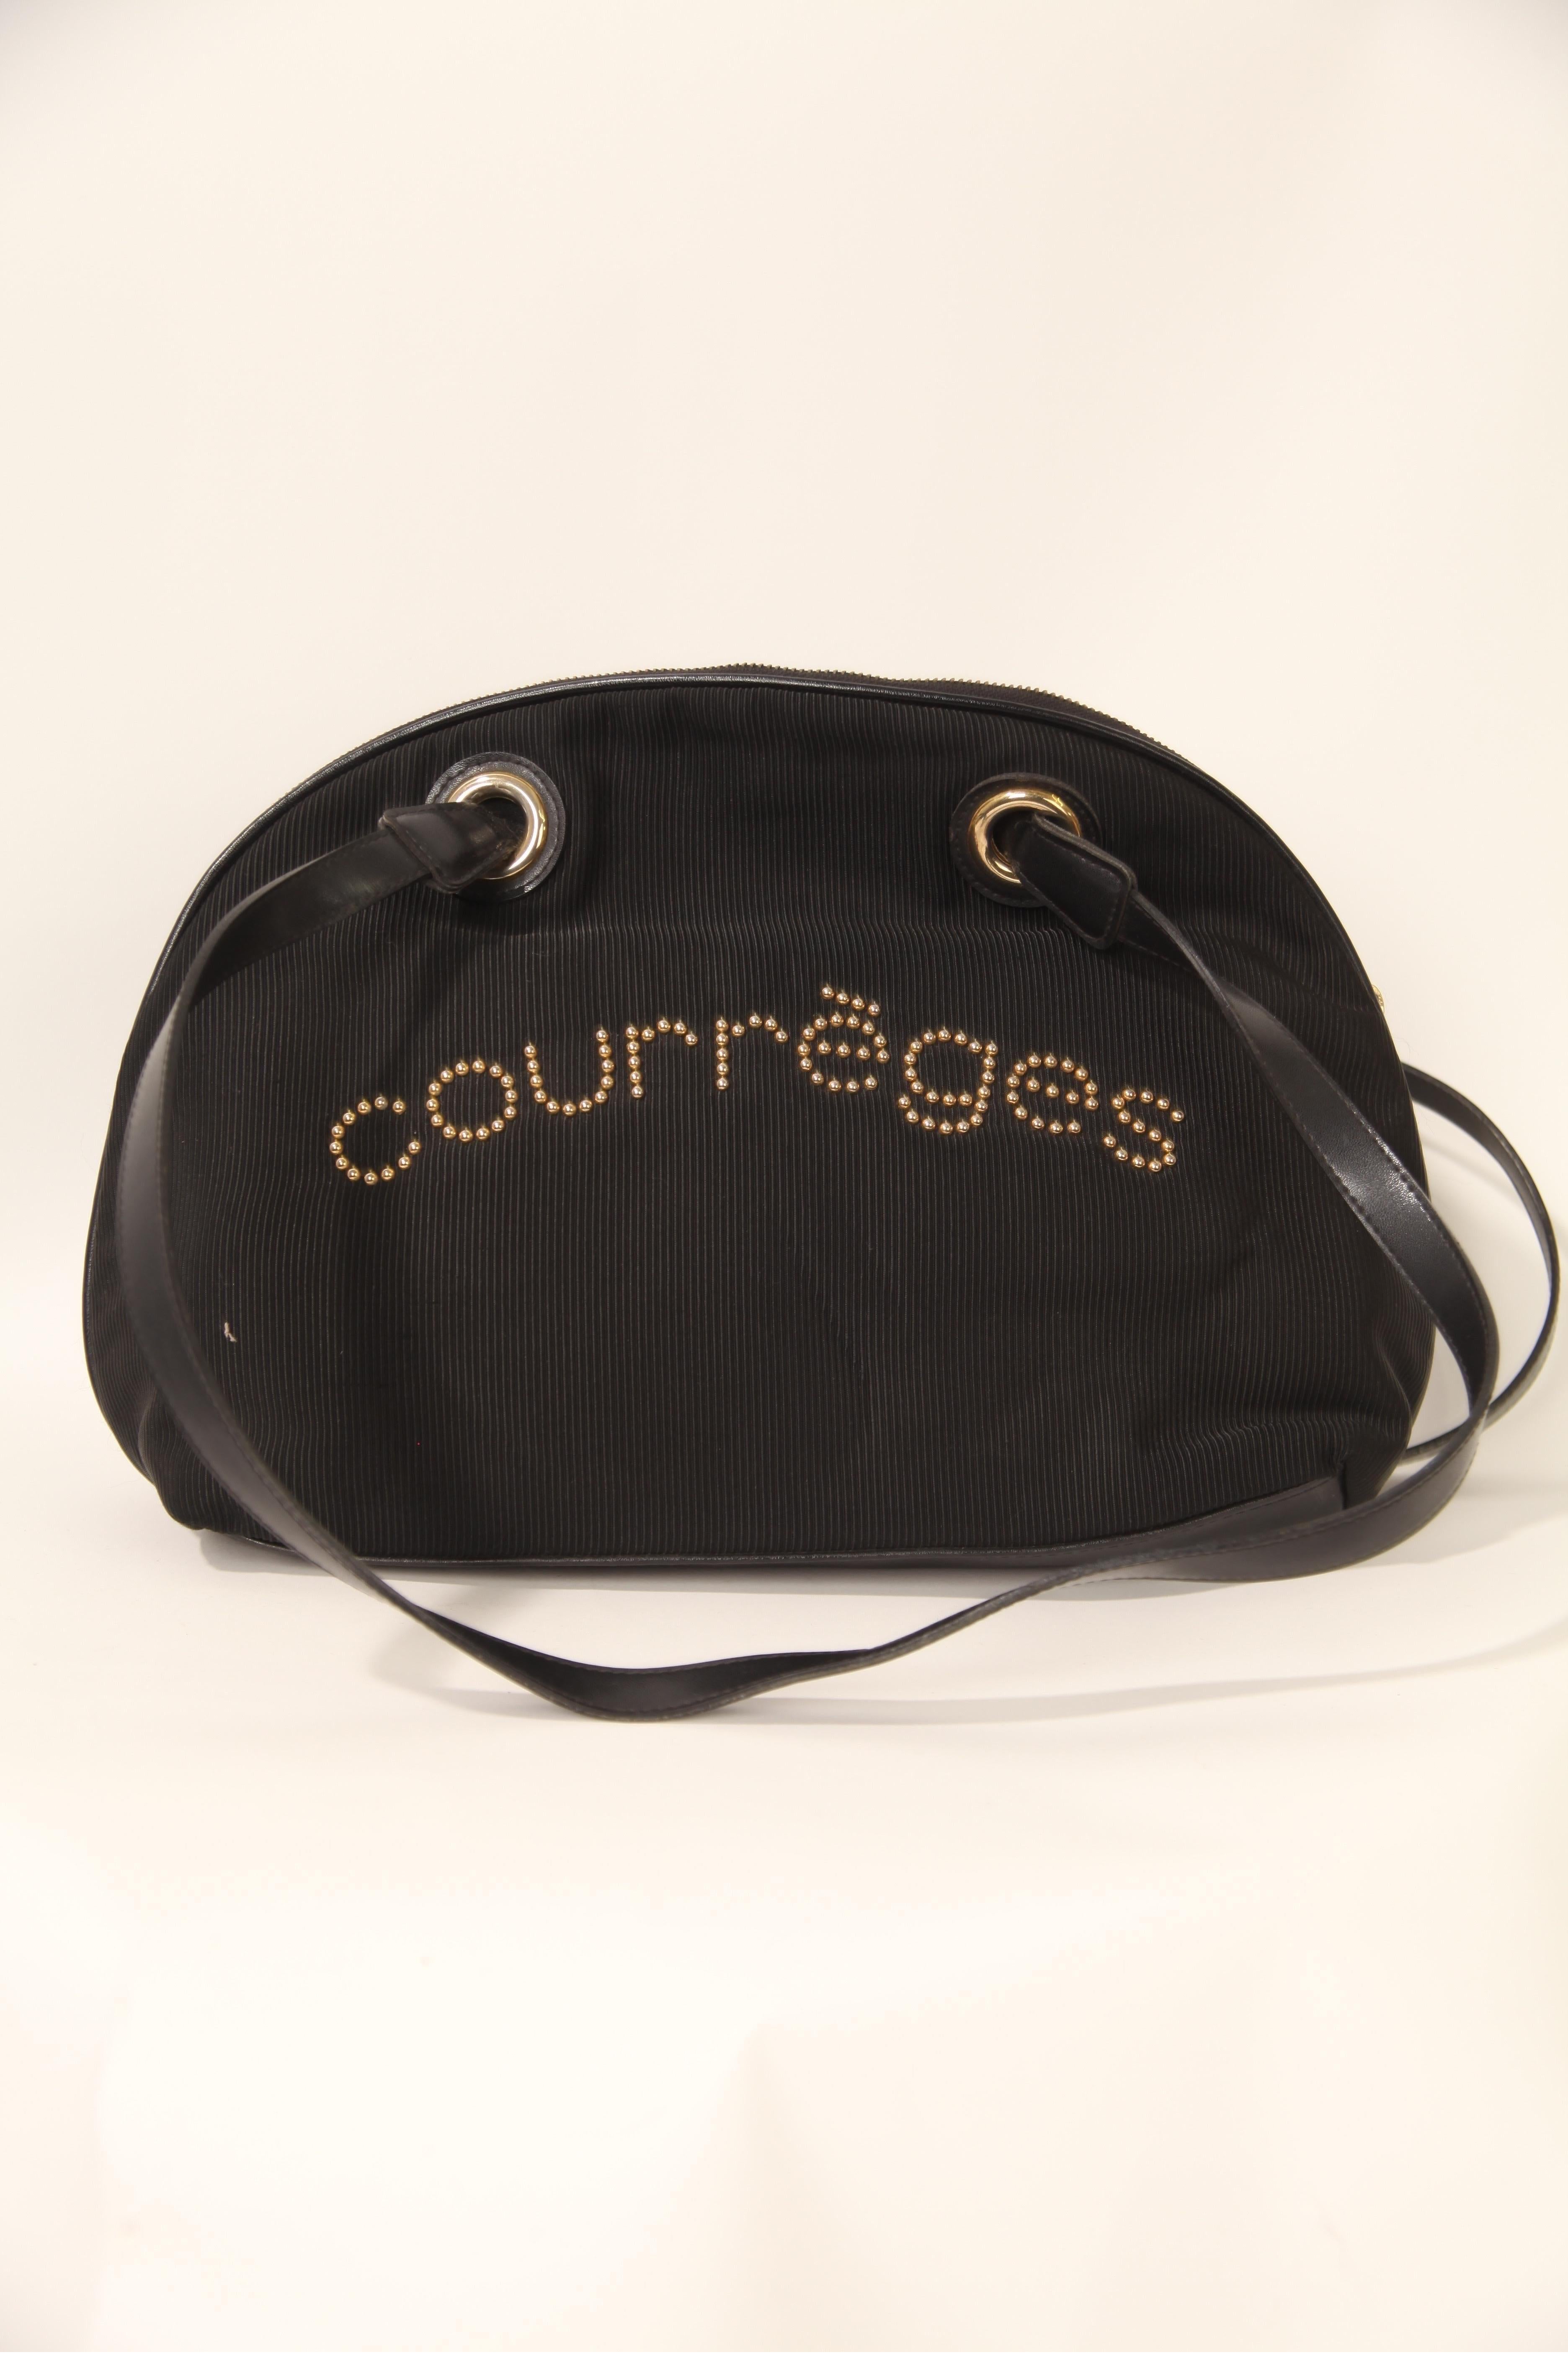 Courrèges, ein von André Courrèges gegründetes französisches Modehaus, war in den 1960er und 1970er Jahren für seine futuristischen und avantgardistischen Designs bekannt. Die Tasche Demi Lune von Courrèges ist ein klassisches Design des Modehauses.